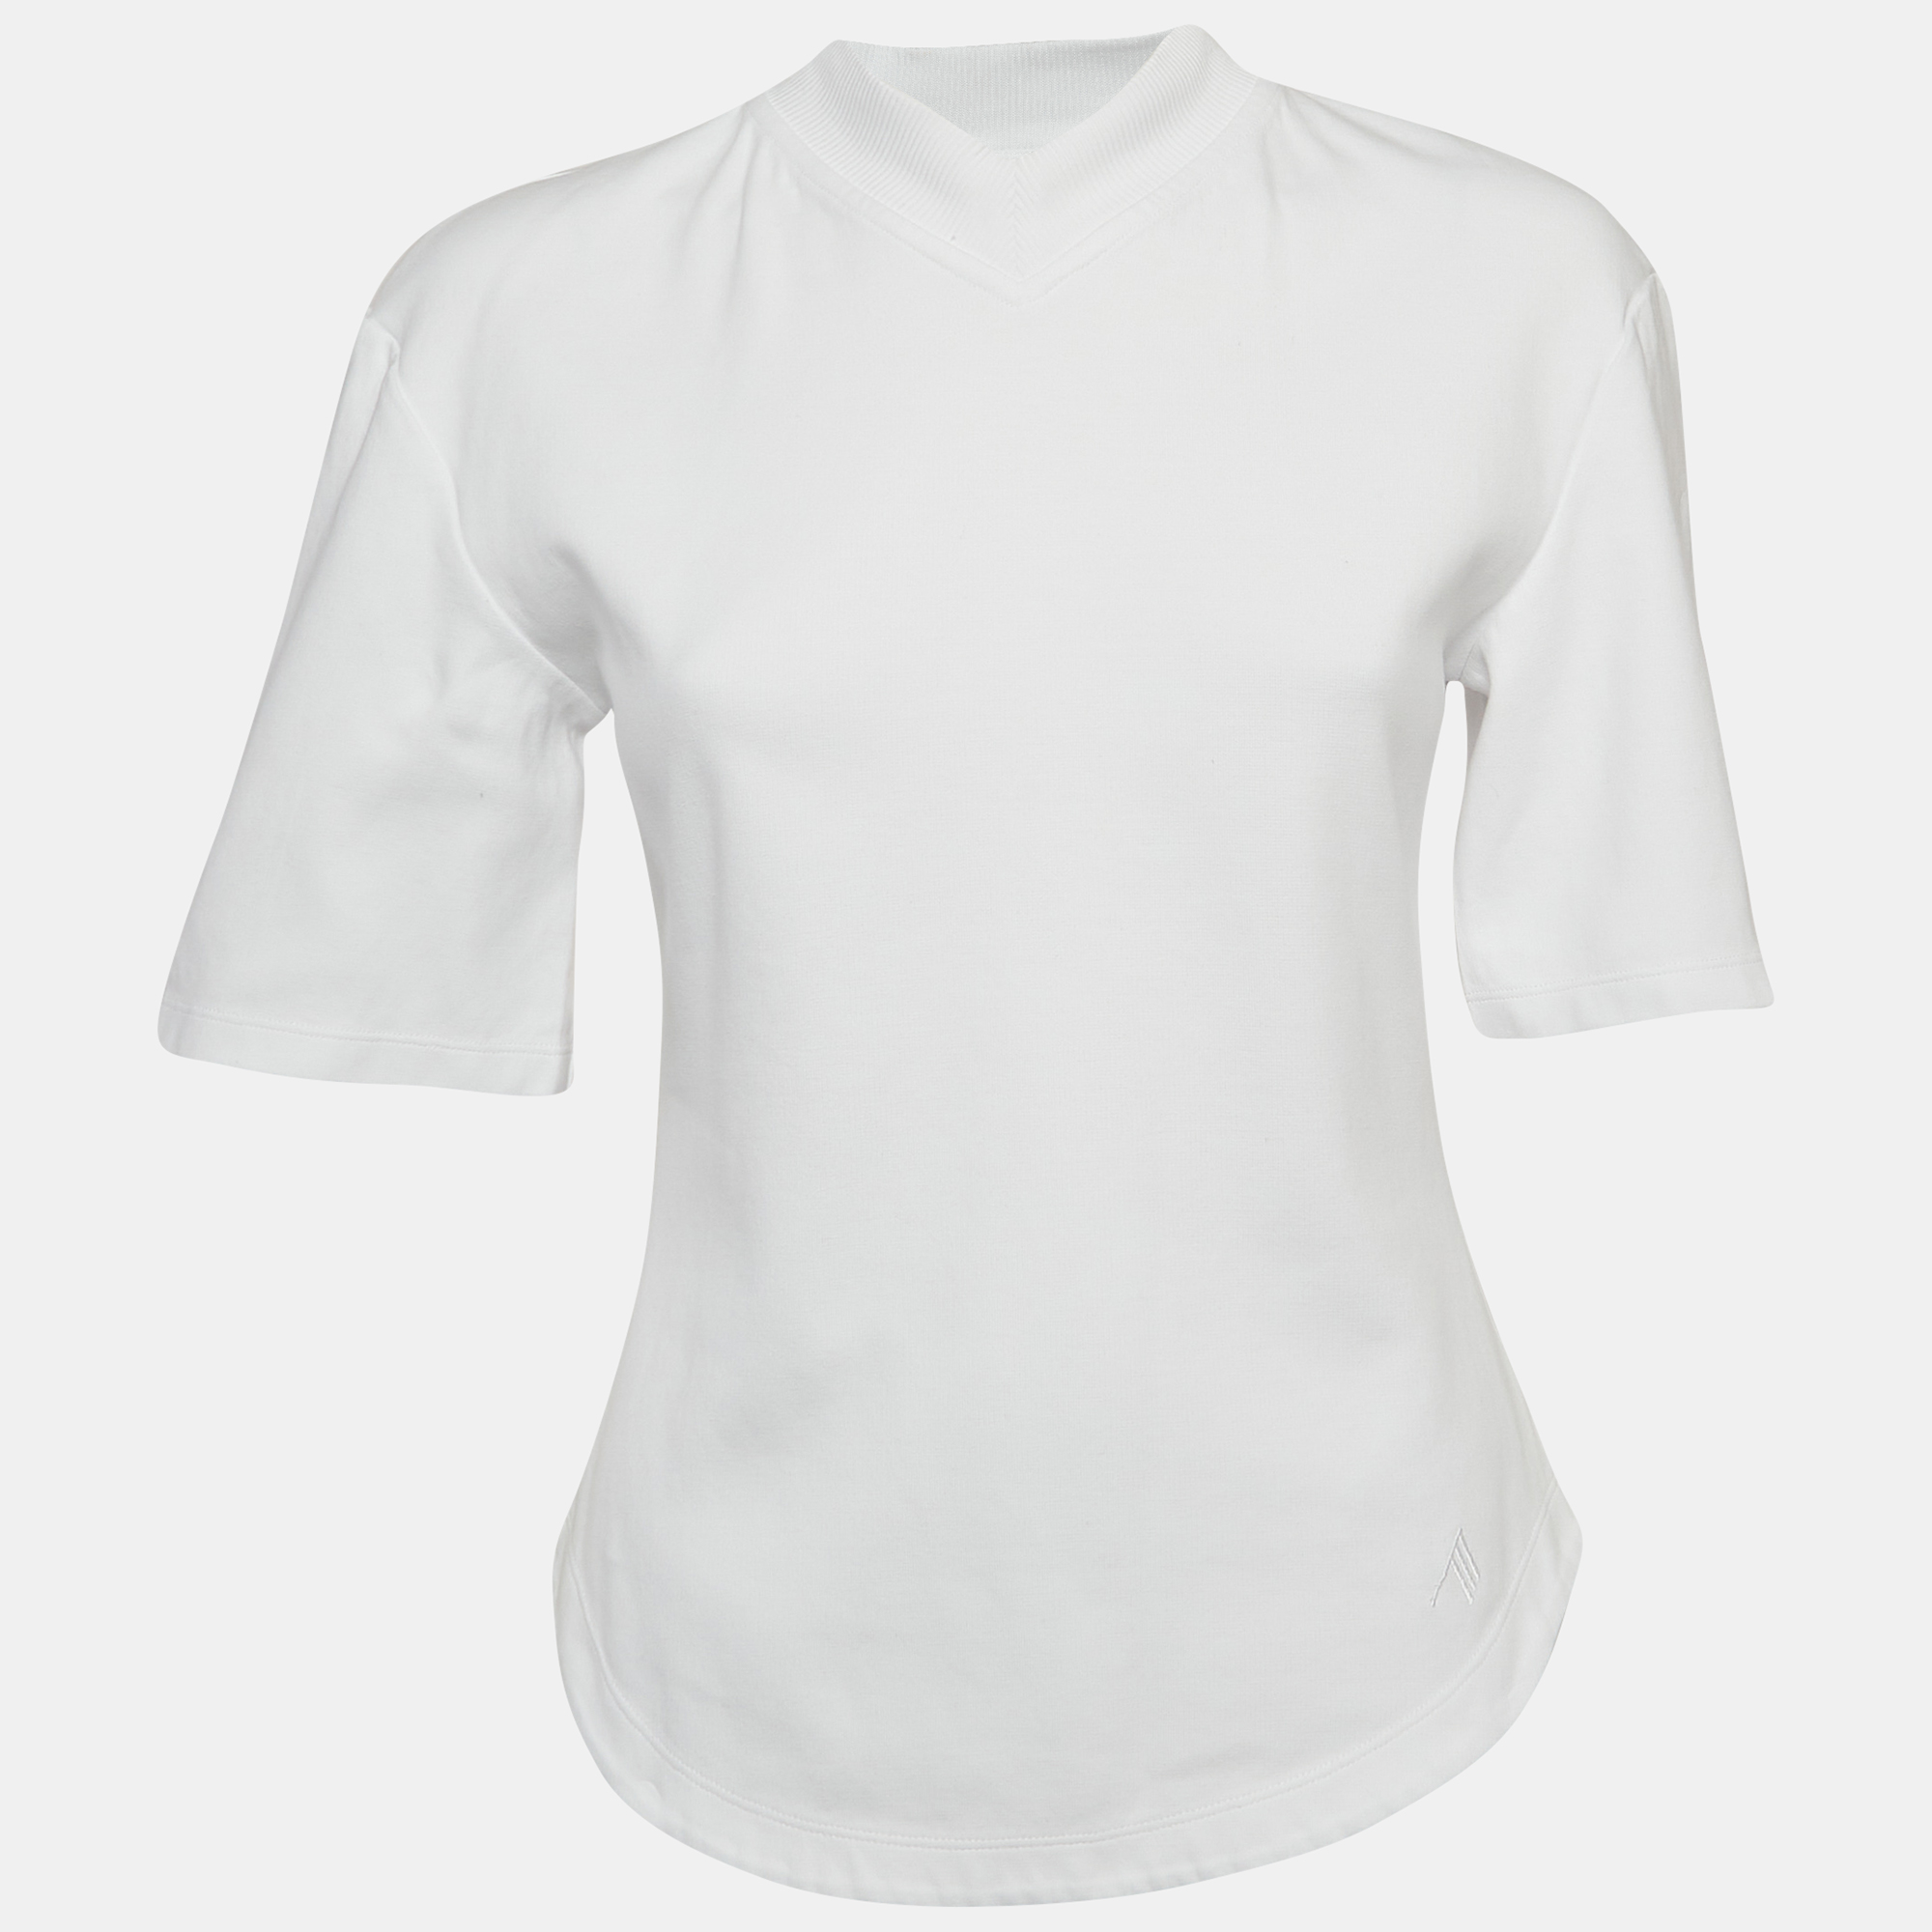 The attico white cotton knit v-neck t-shirt s